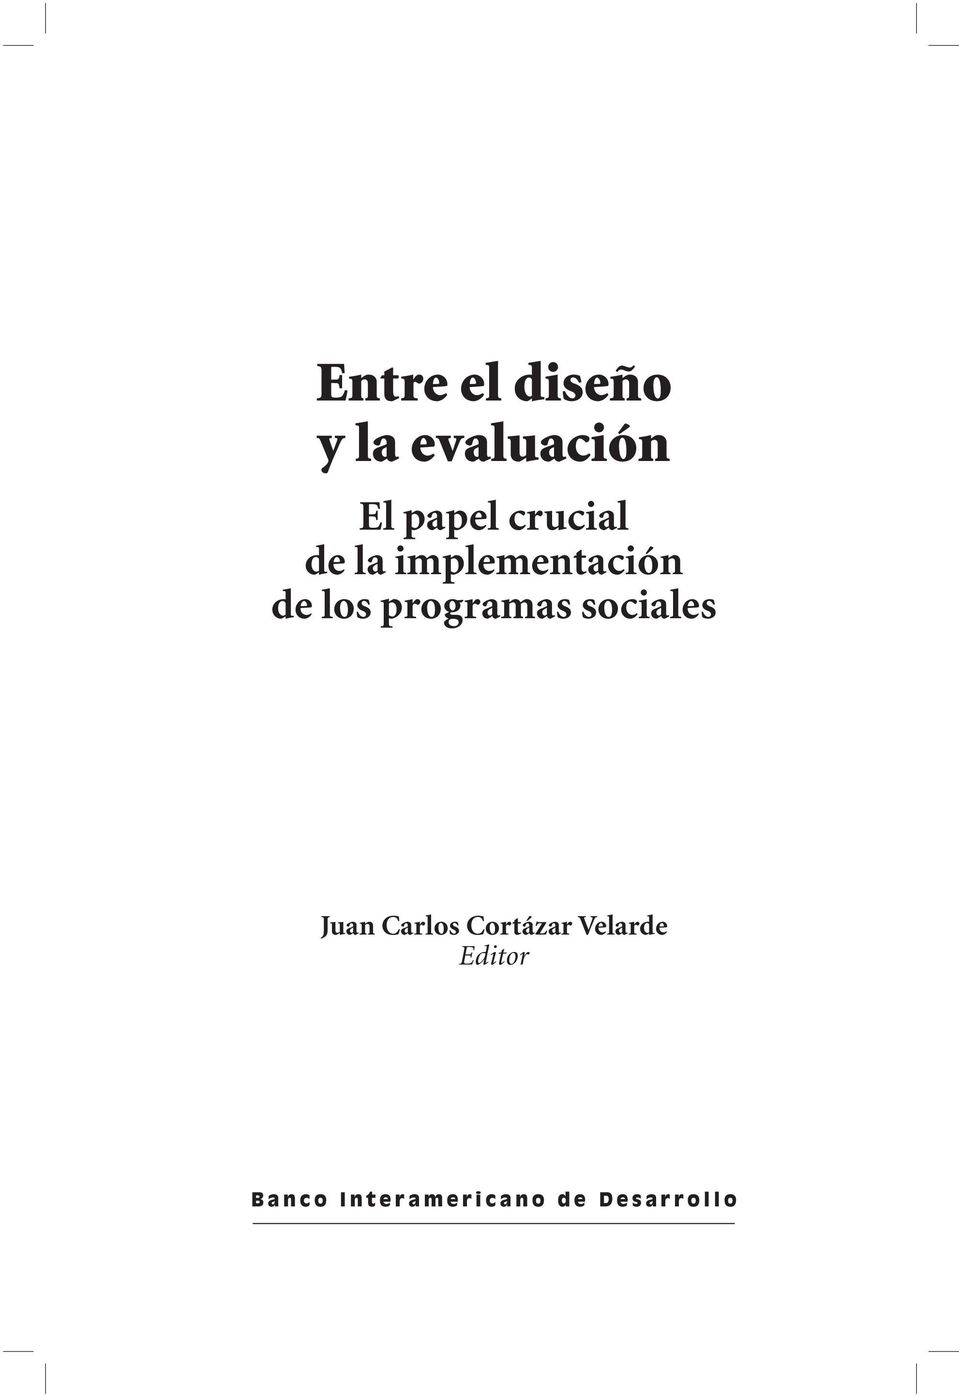 Juan Carlos Cortázar Velarde Editor B a n c o I